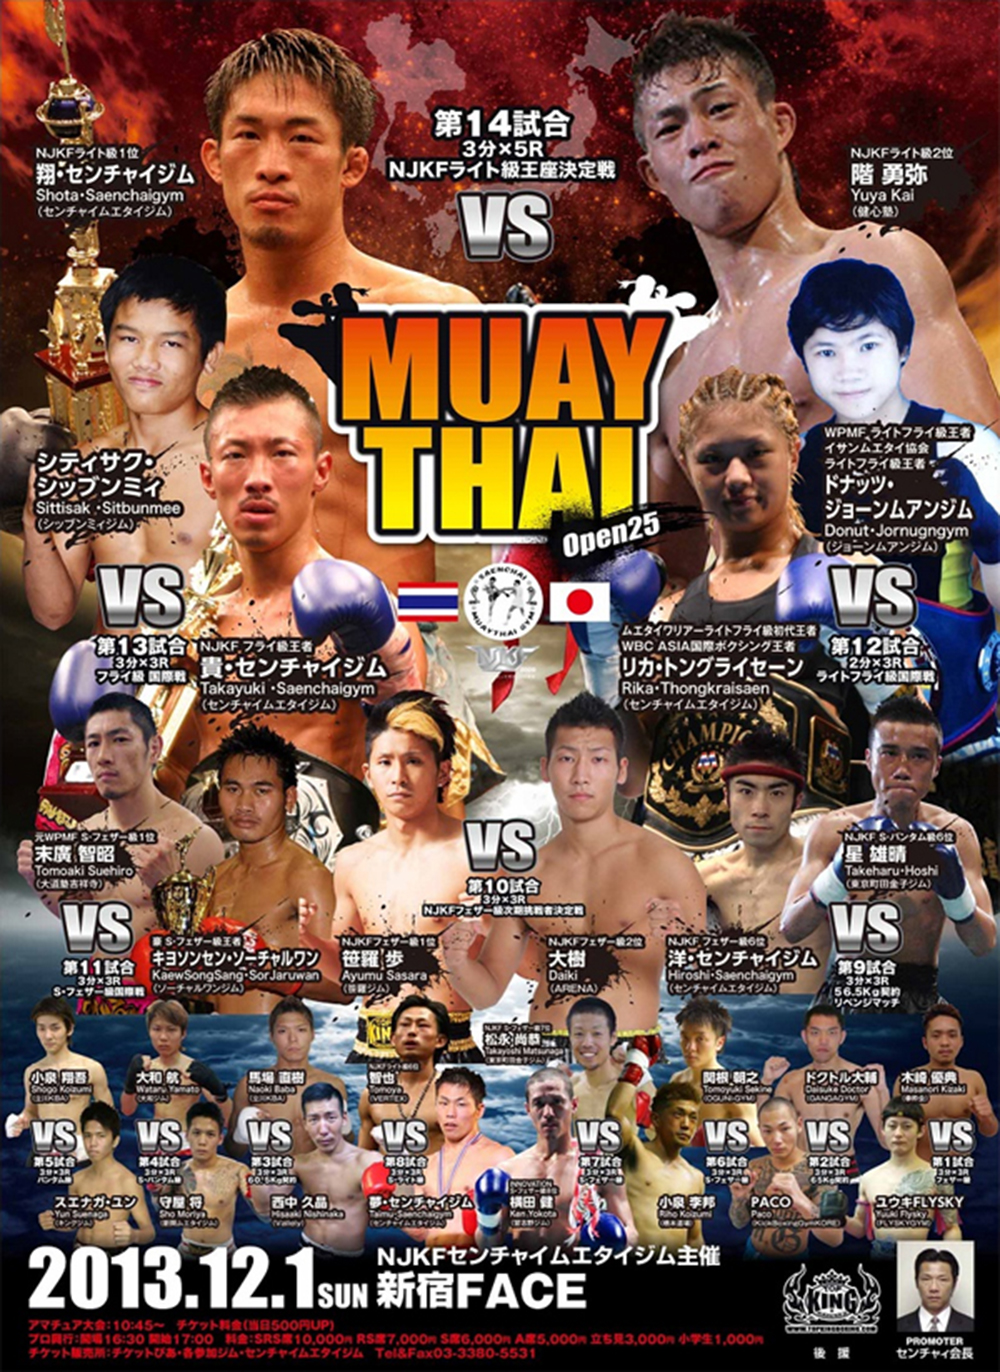 Muay Thai Open 25